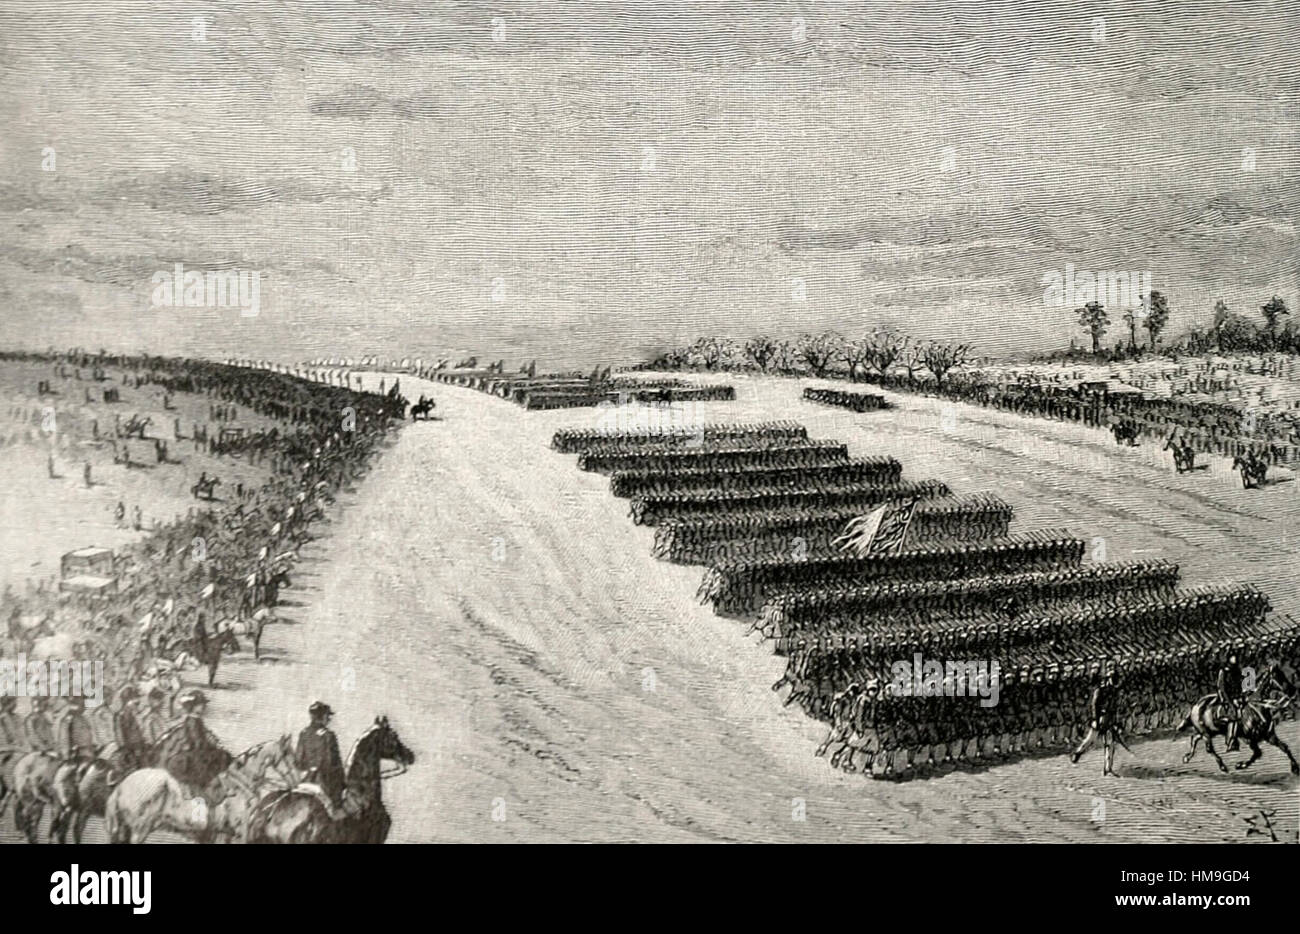 Den großen Beitrag bei Falmouth bei Präsident Lincoln Besuch - USA Bürgerkrieg Stockfoto